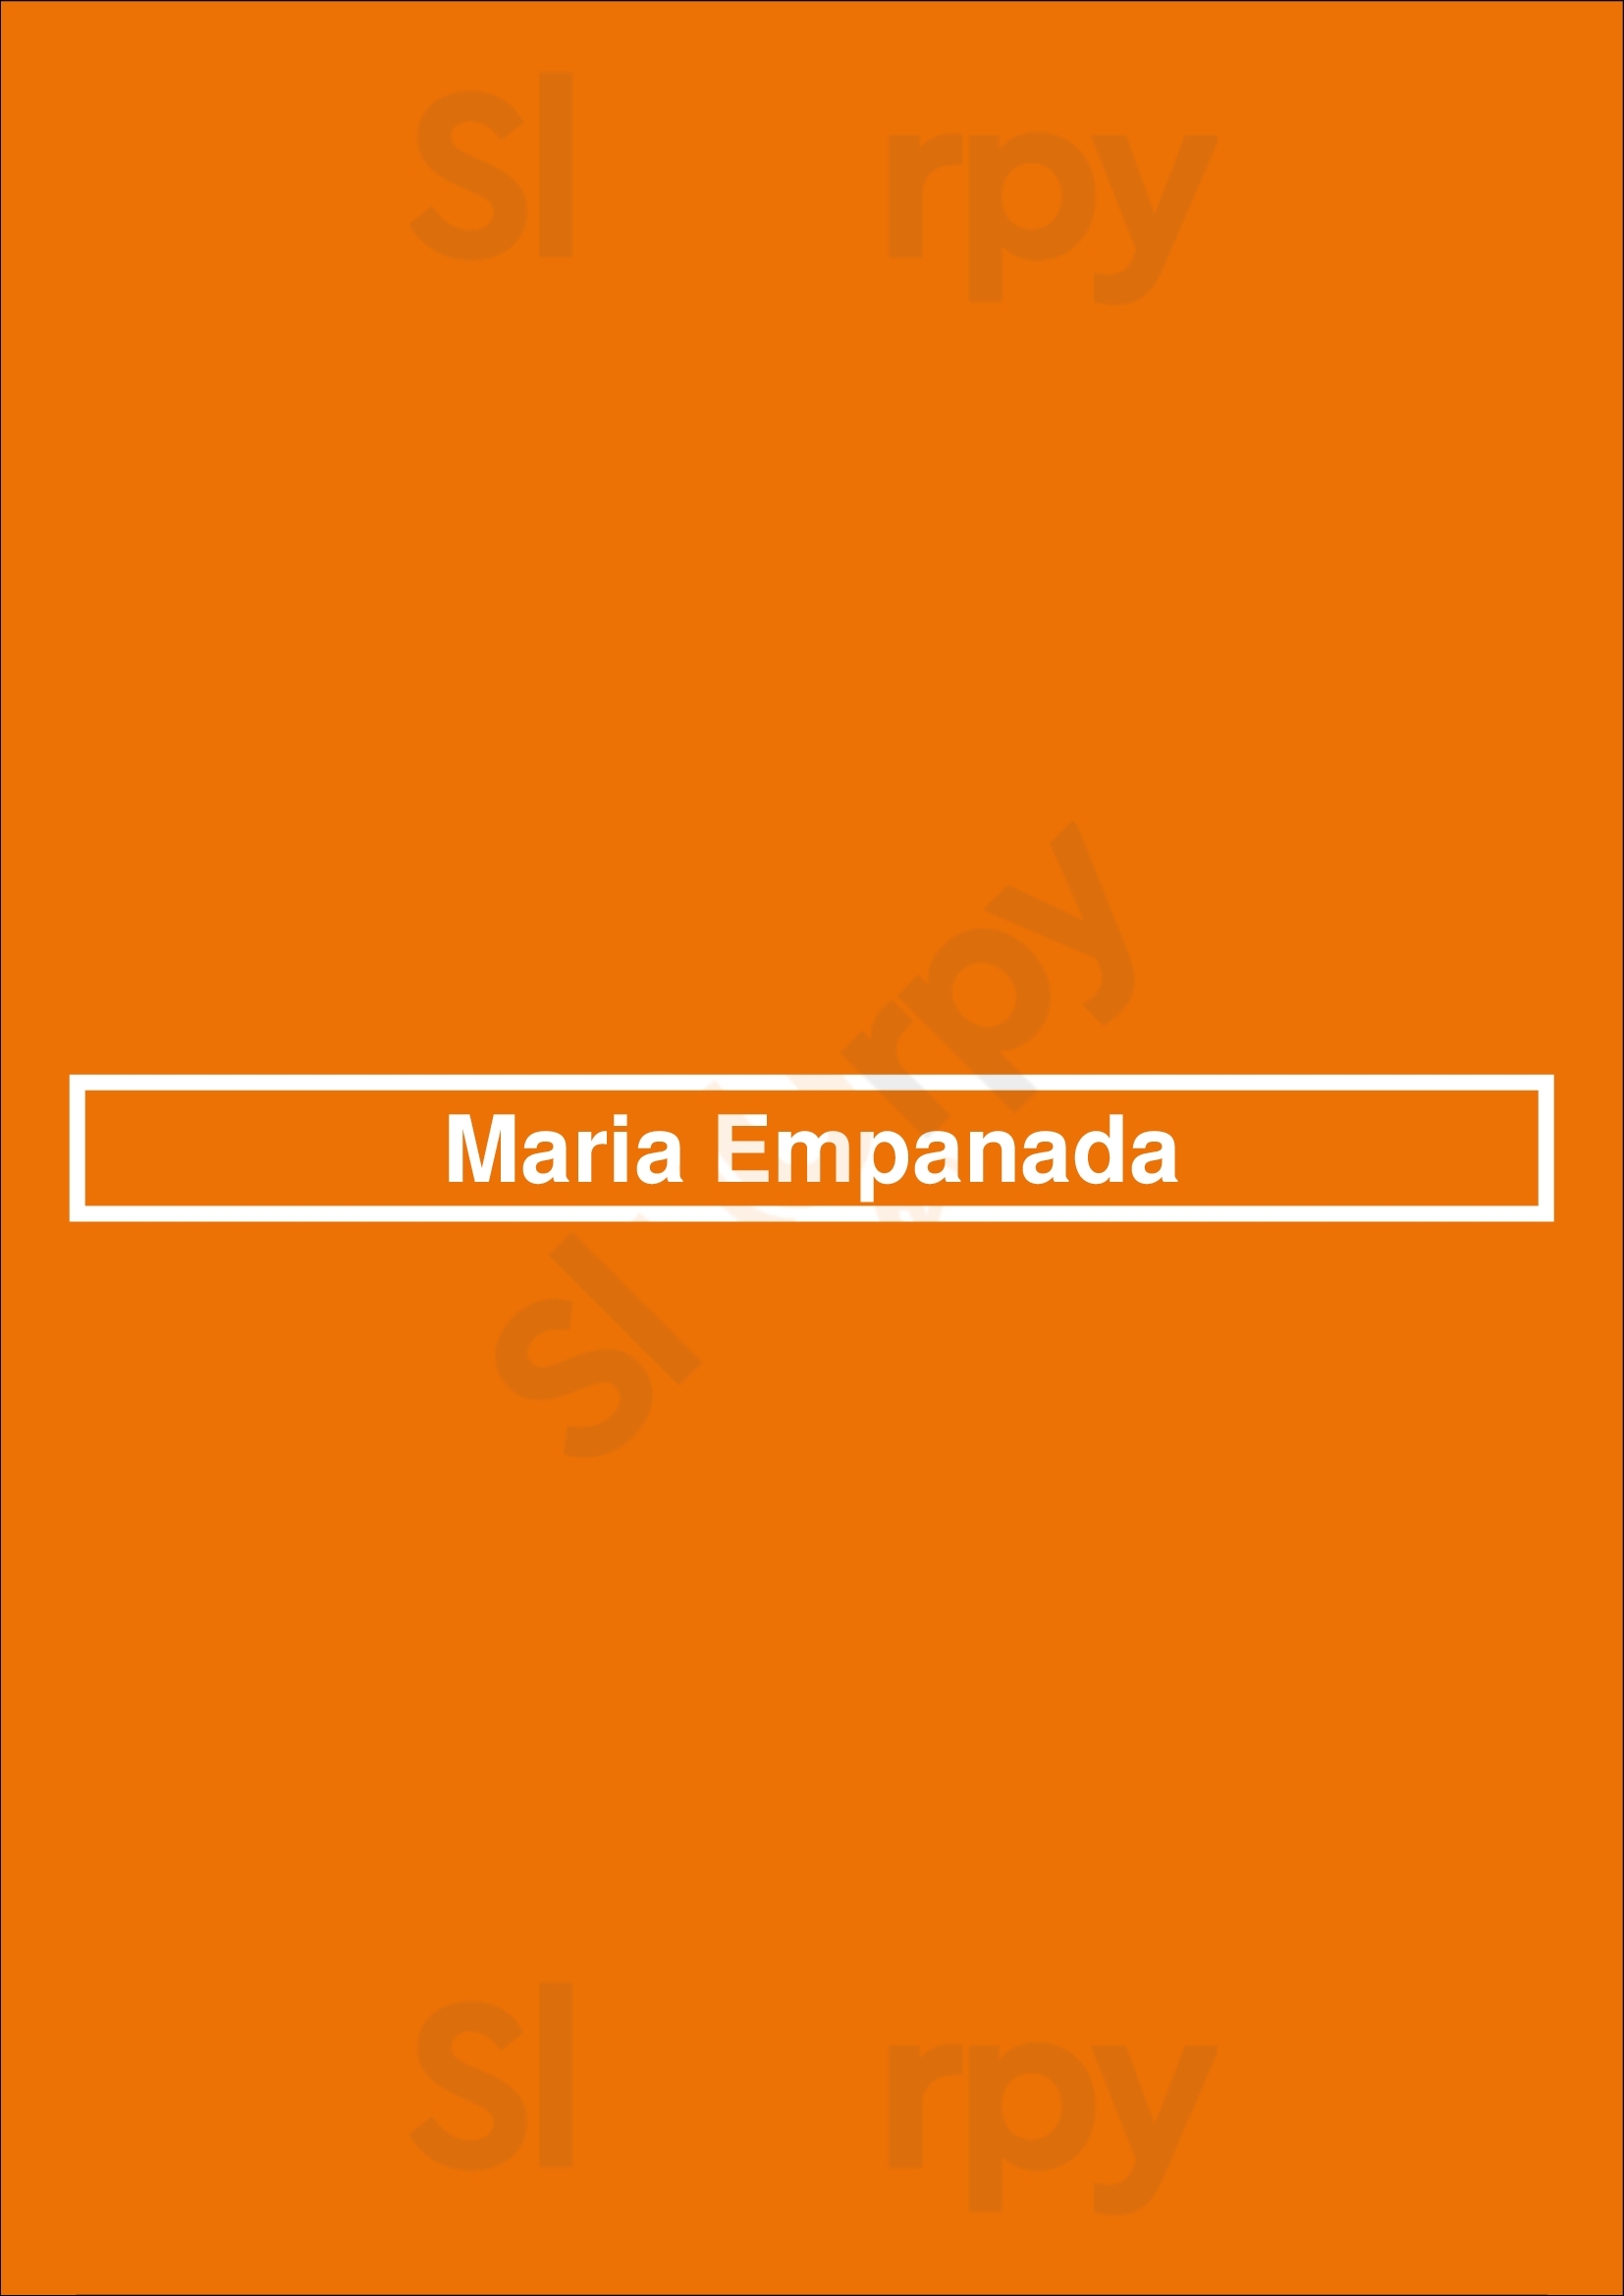 Maria Empanada - South Broadway Denver Menu - 1